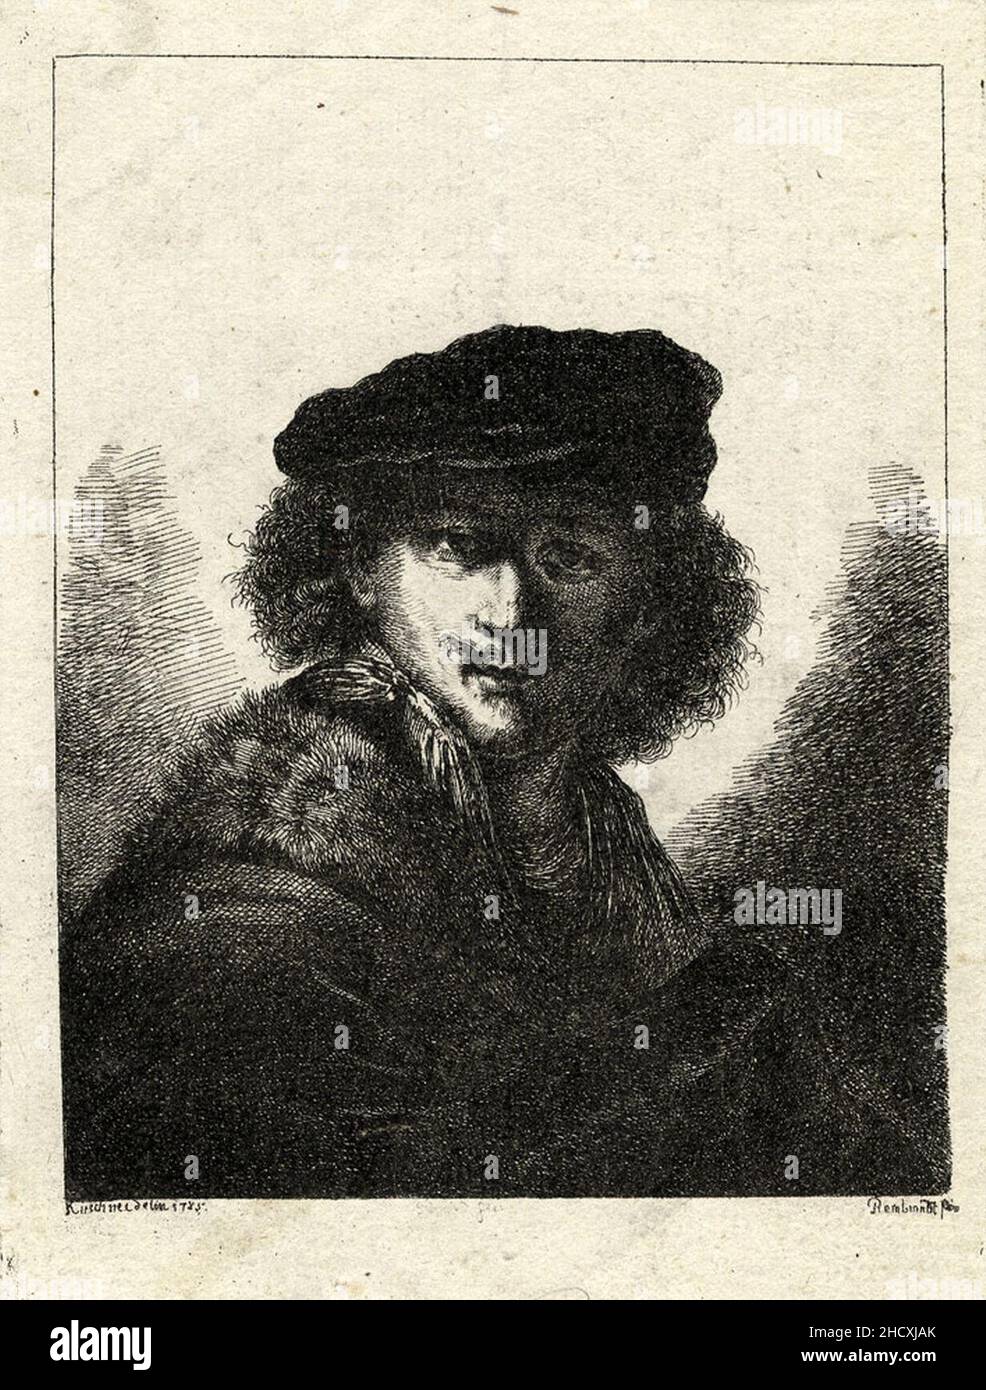 Rembrandt van Rijn Jugendliches Selbstbildnis 1785 ubs G 0886 II. Stock Photo